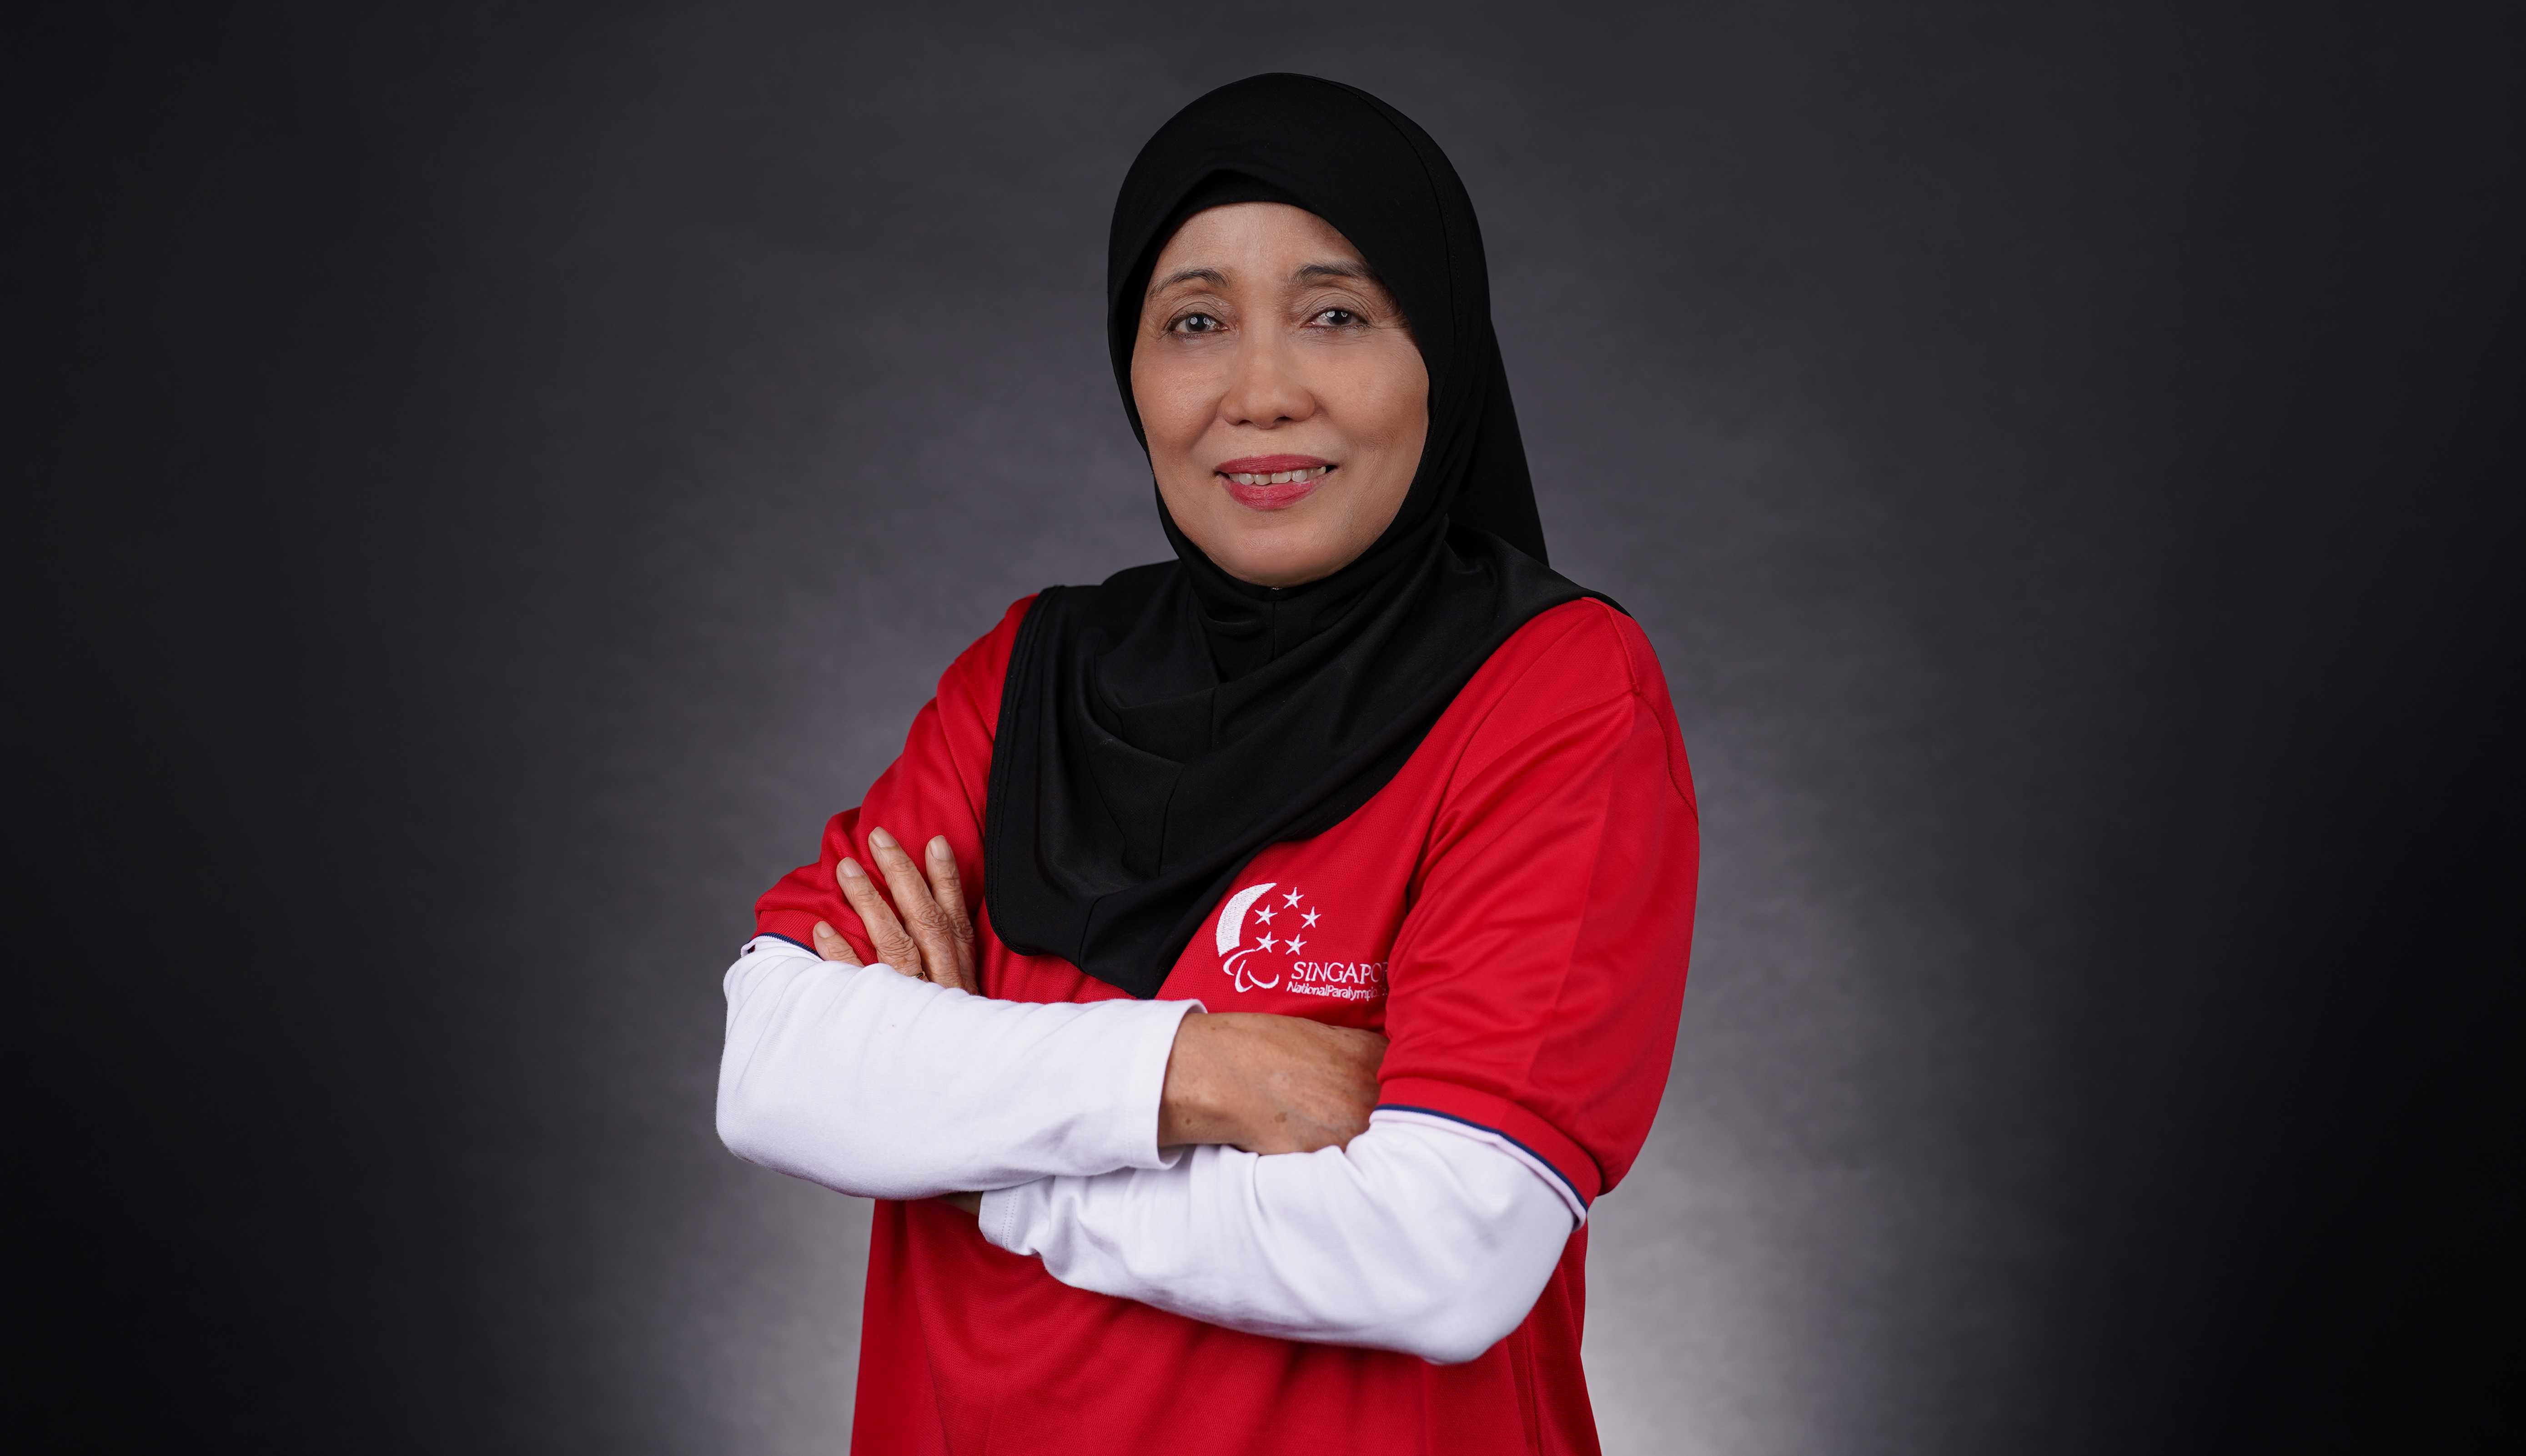 Faridah Binte Salleh